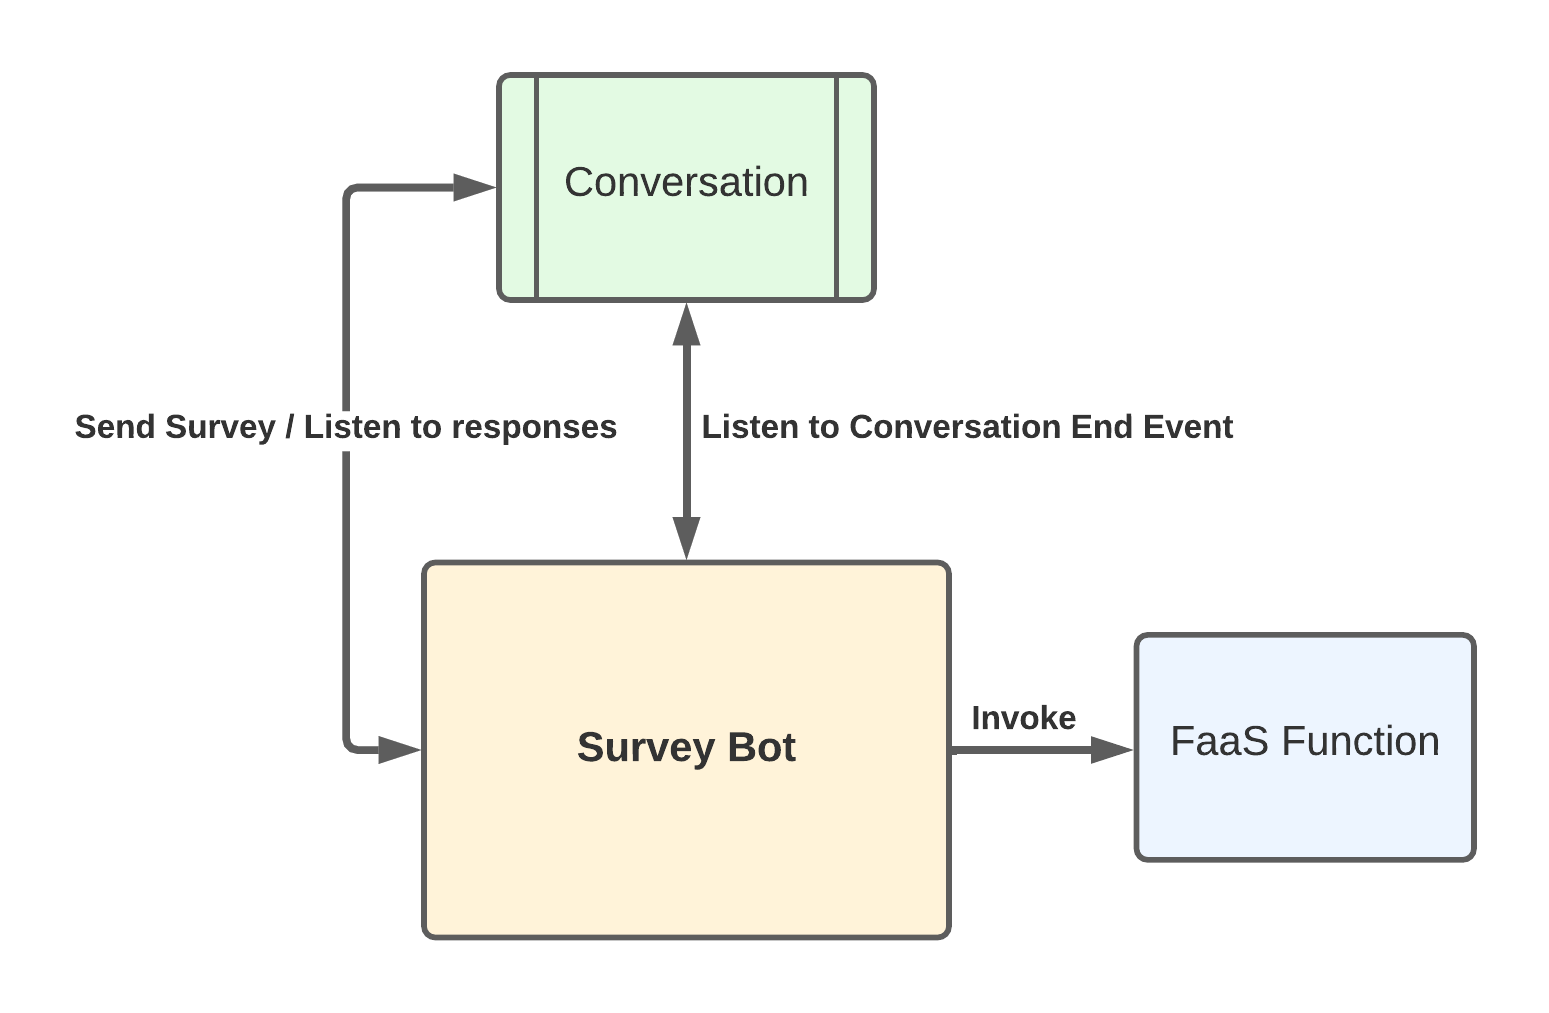 Functions: Post Conversation Survey Flow